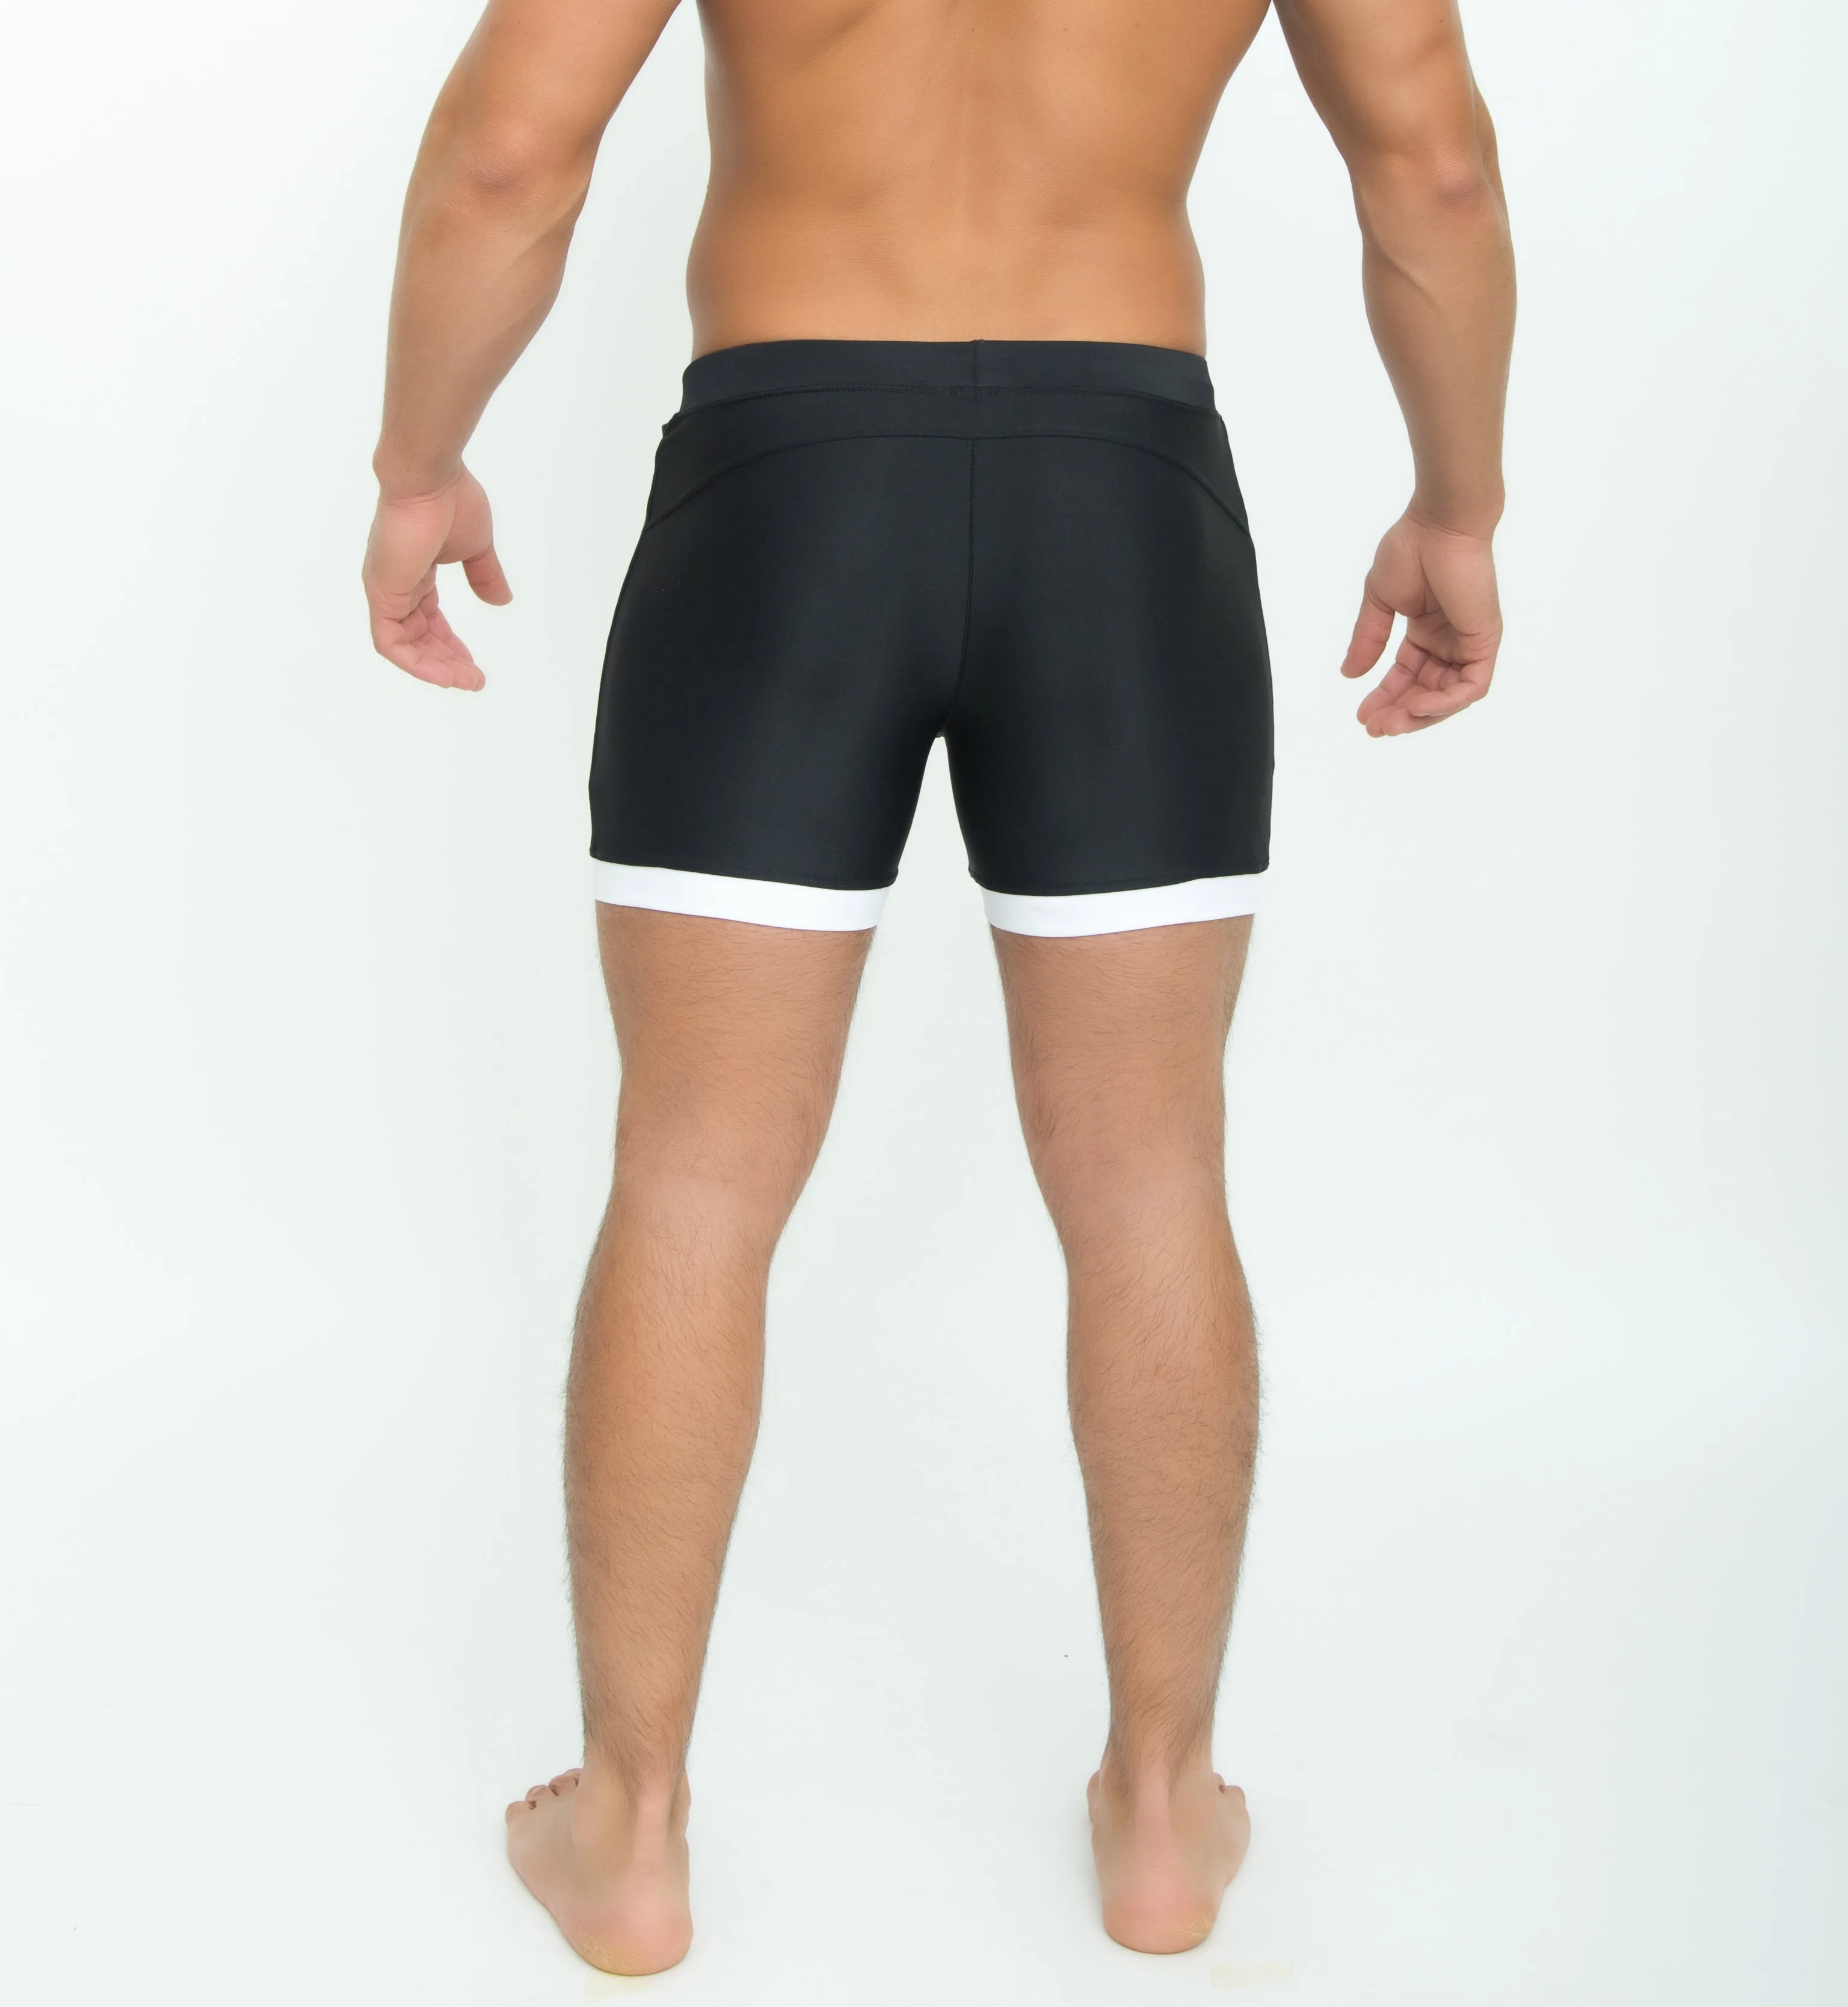 Taddlee бренд для мужчин's купальники для малышек сплошной черный цвет одноцветное традиционные длинные купальники доска пляжные шорт